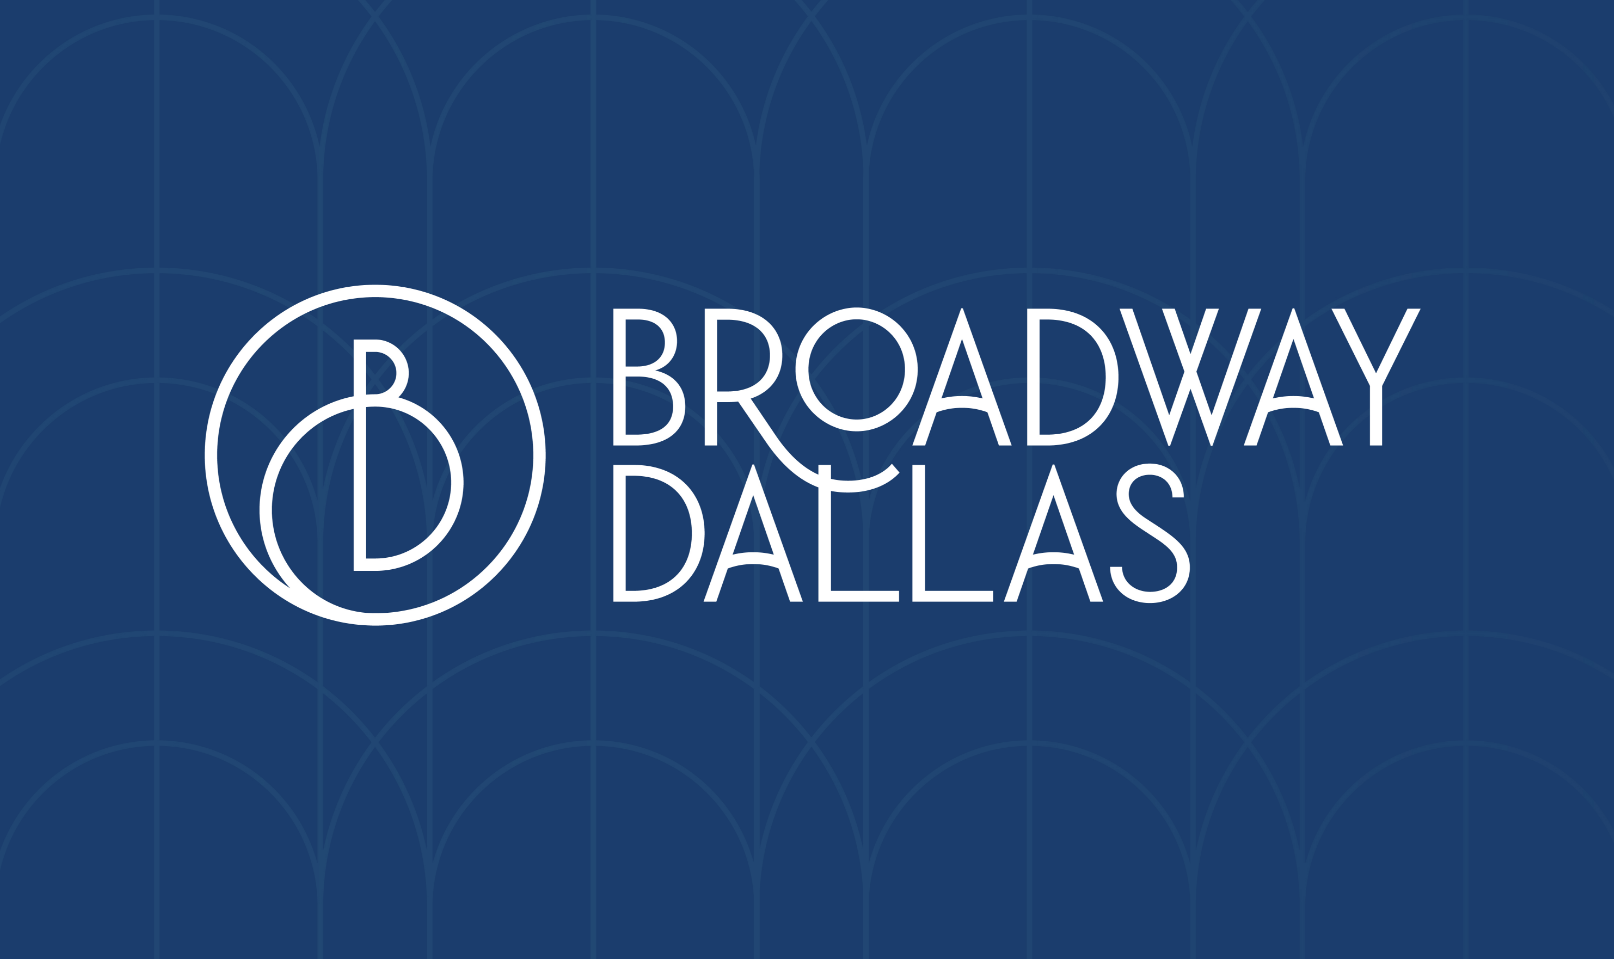 Broadway Dallas announces new board members